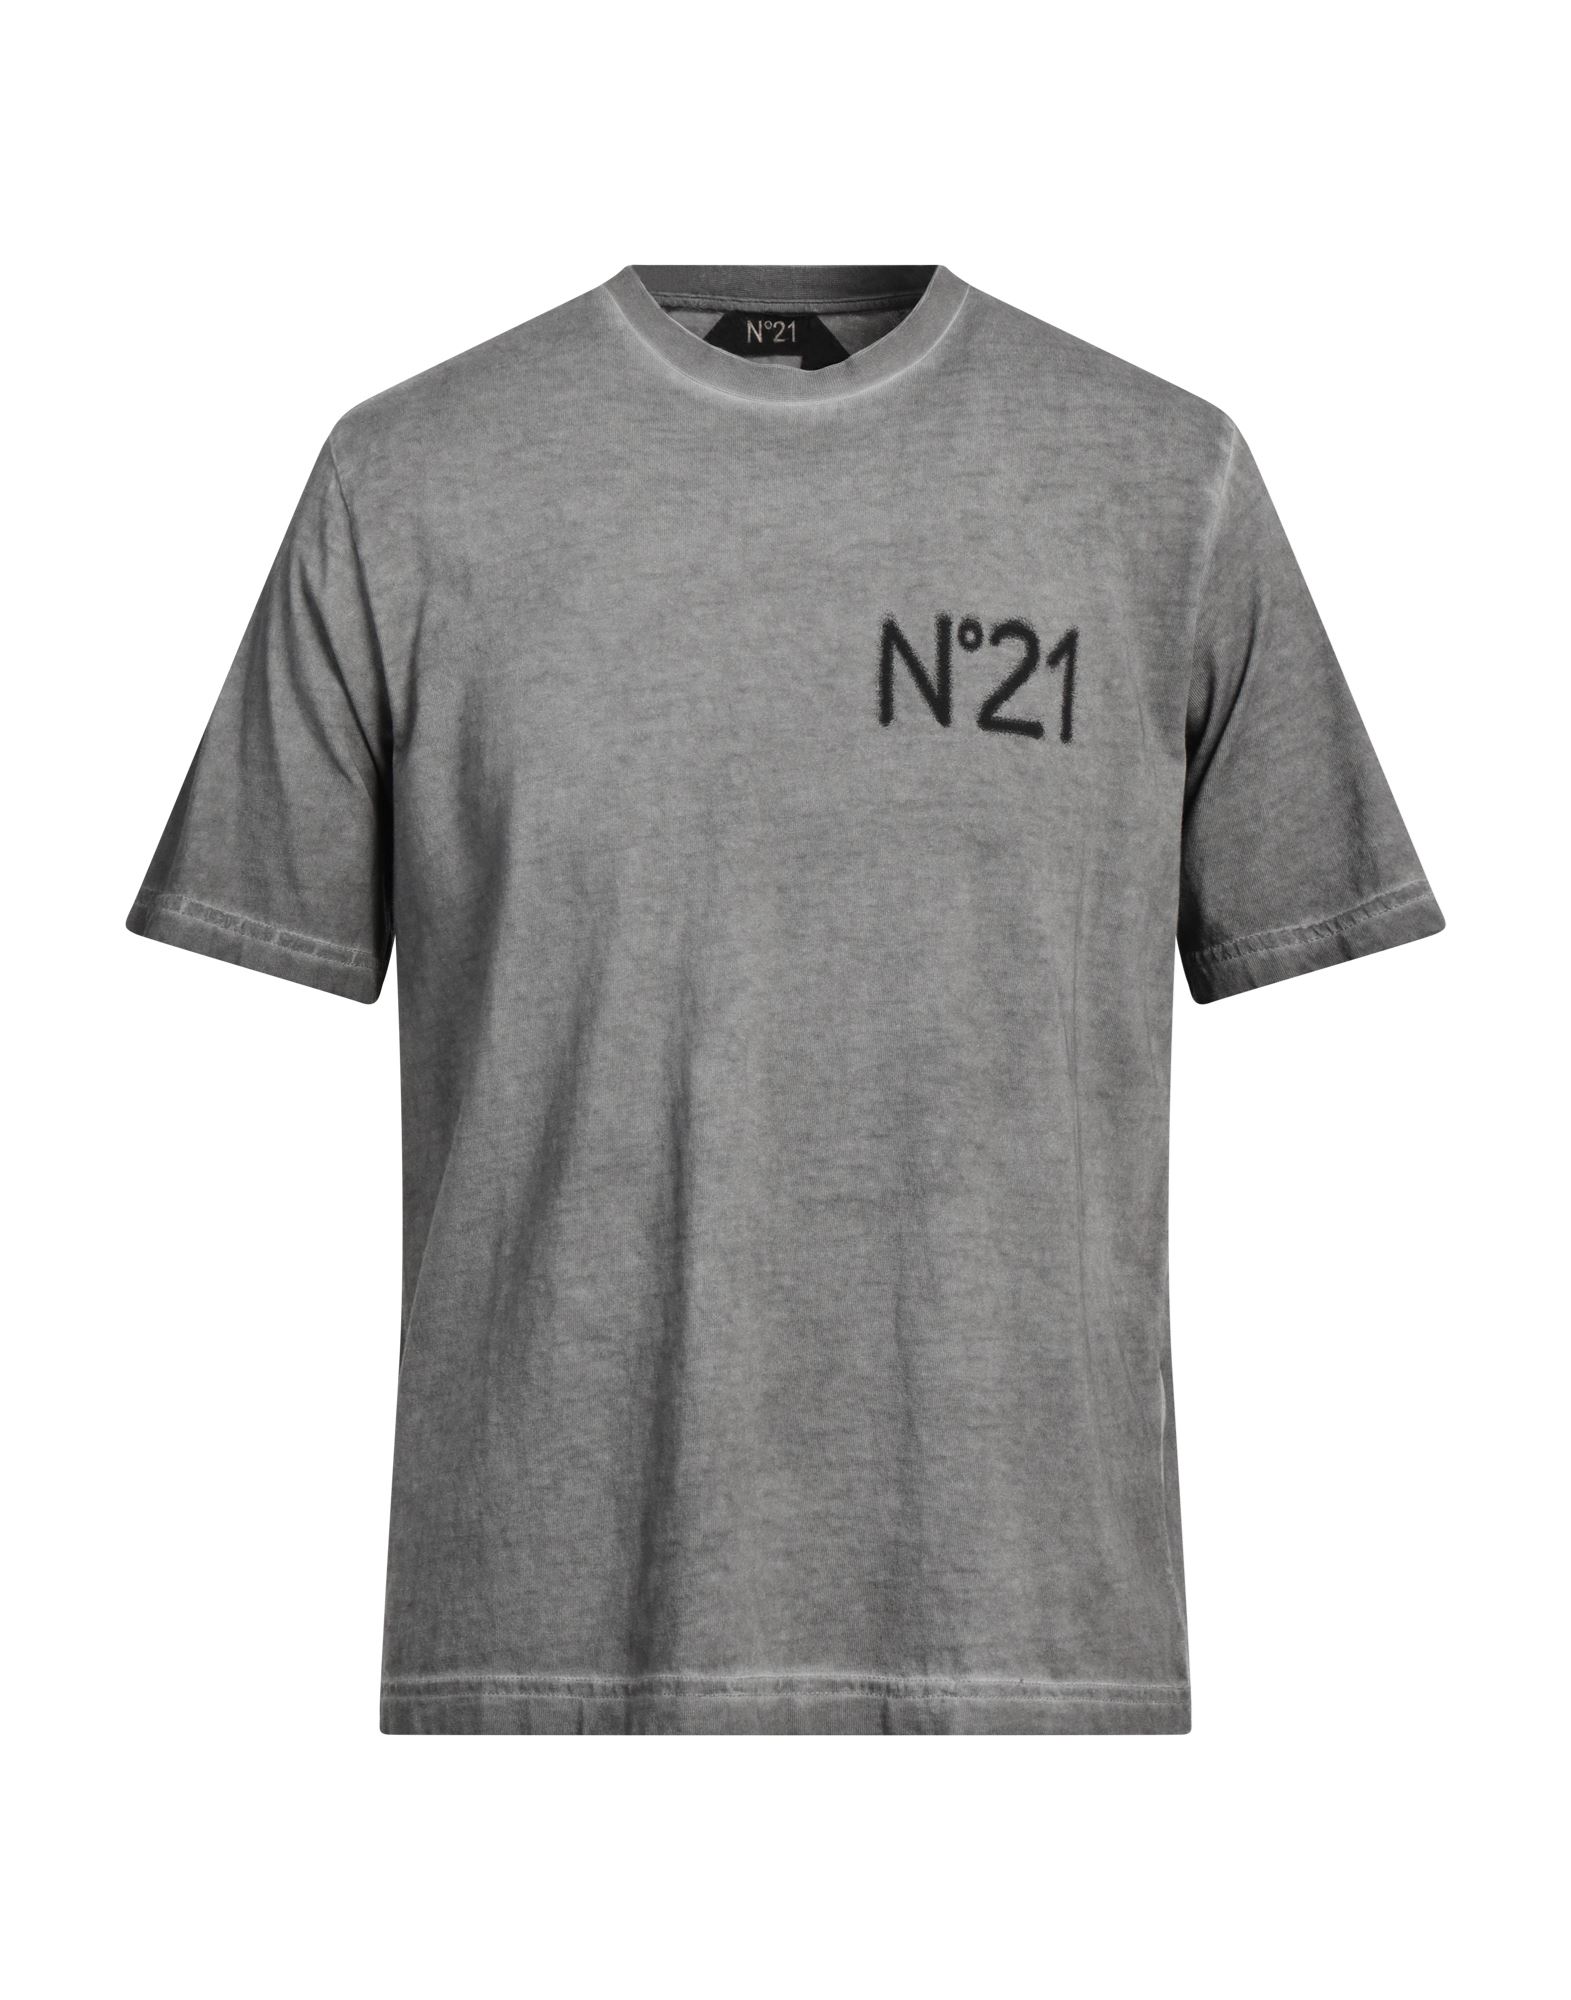 N°21 T-shirts Herren Grau von N°21